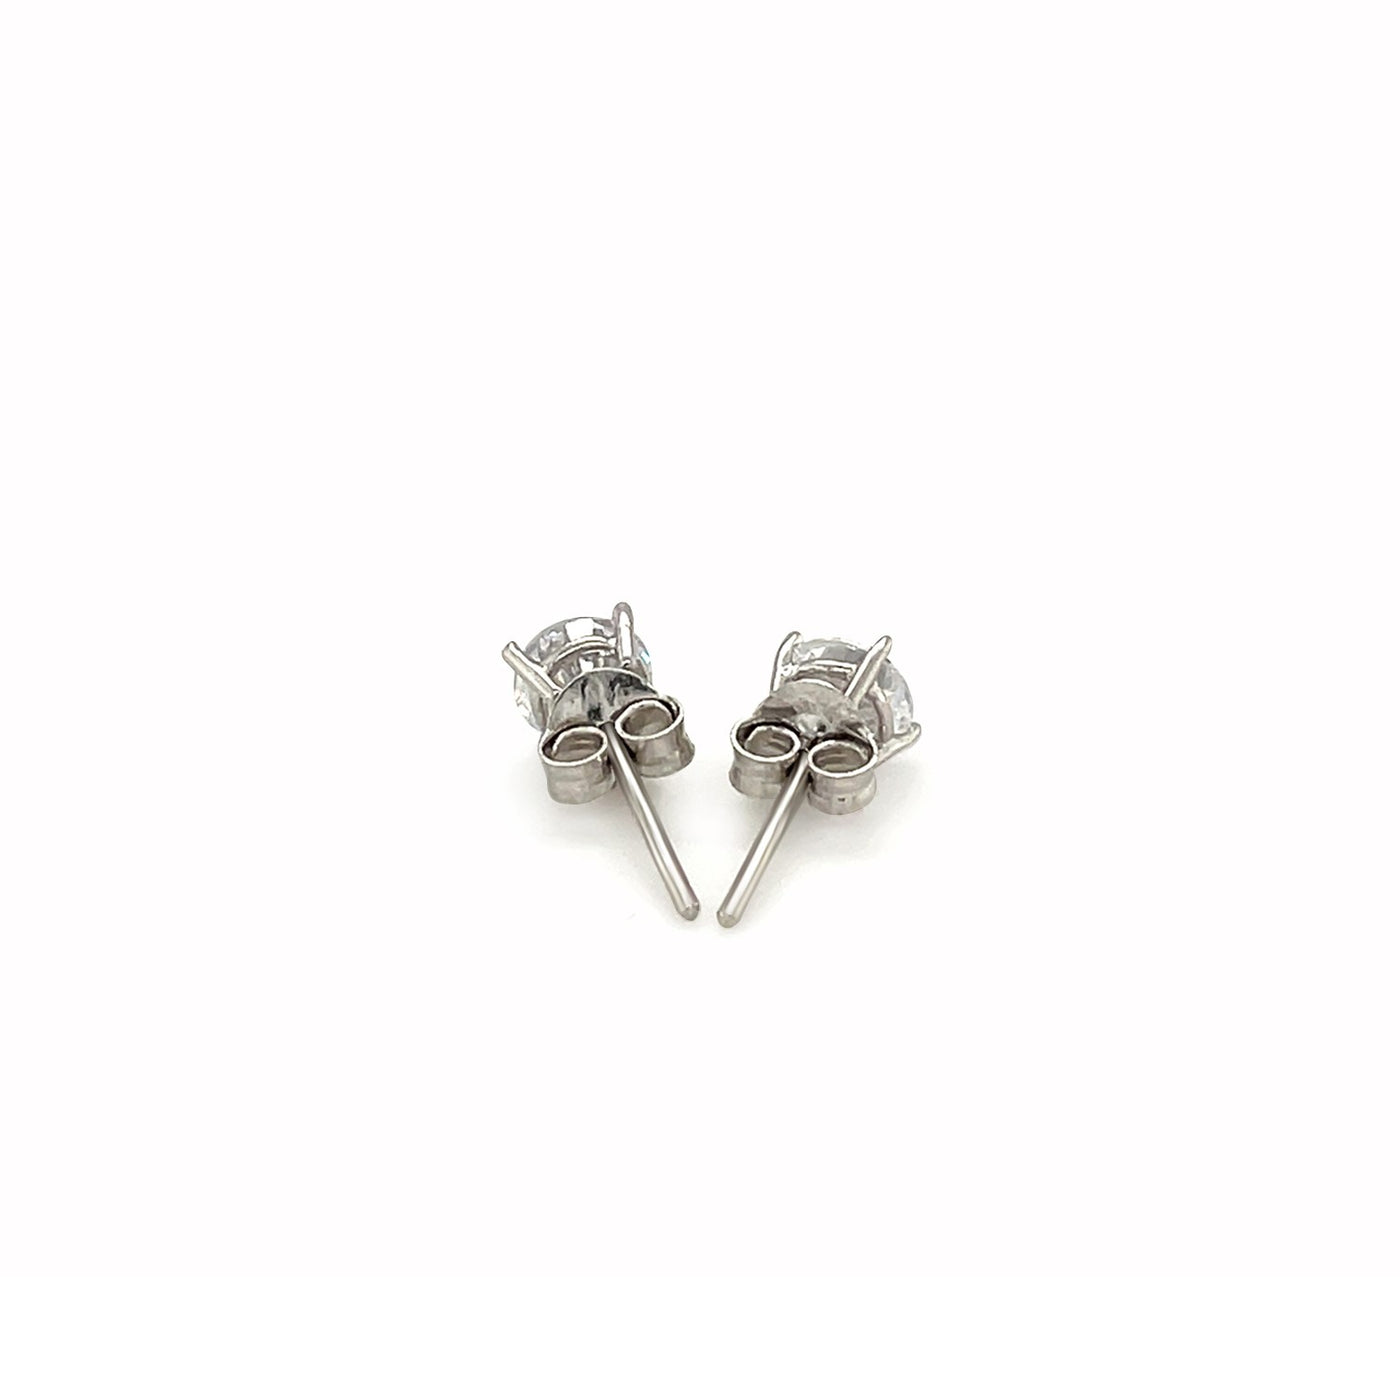 2-Pc. Set Cubic Zirconia Sterling Silver Stud Earrings (5mm)